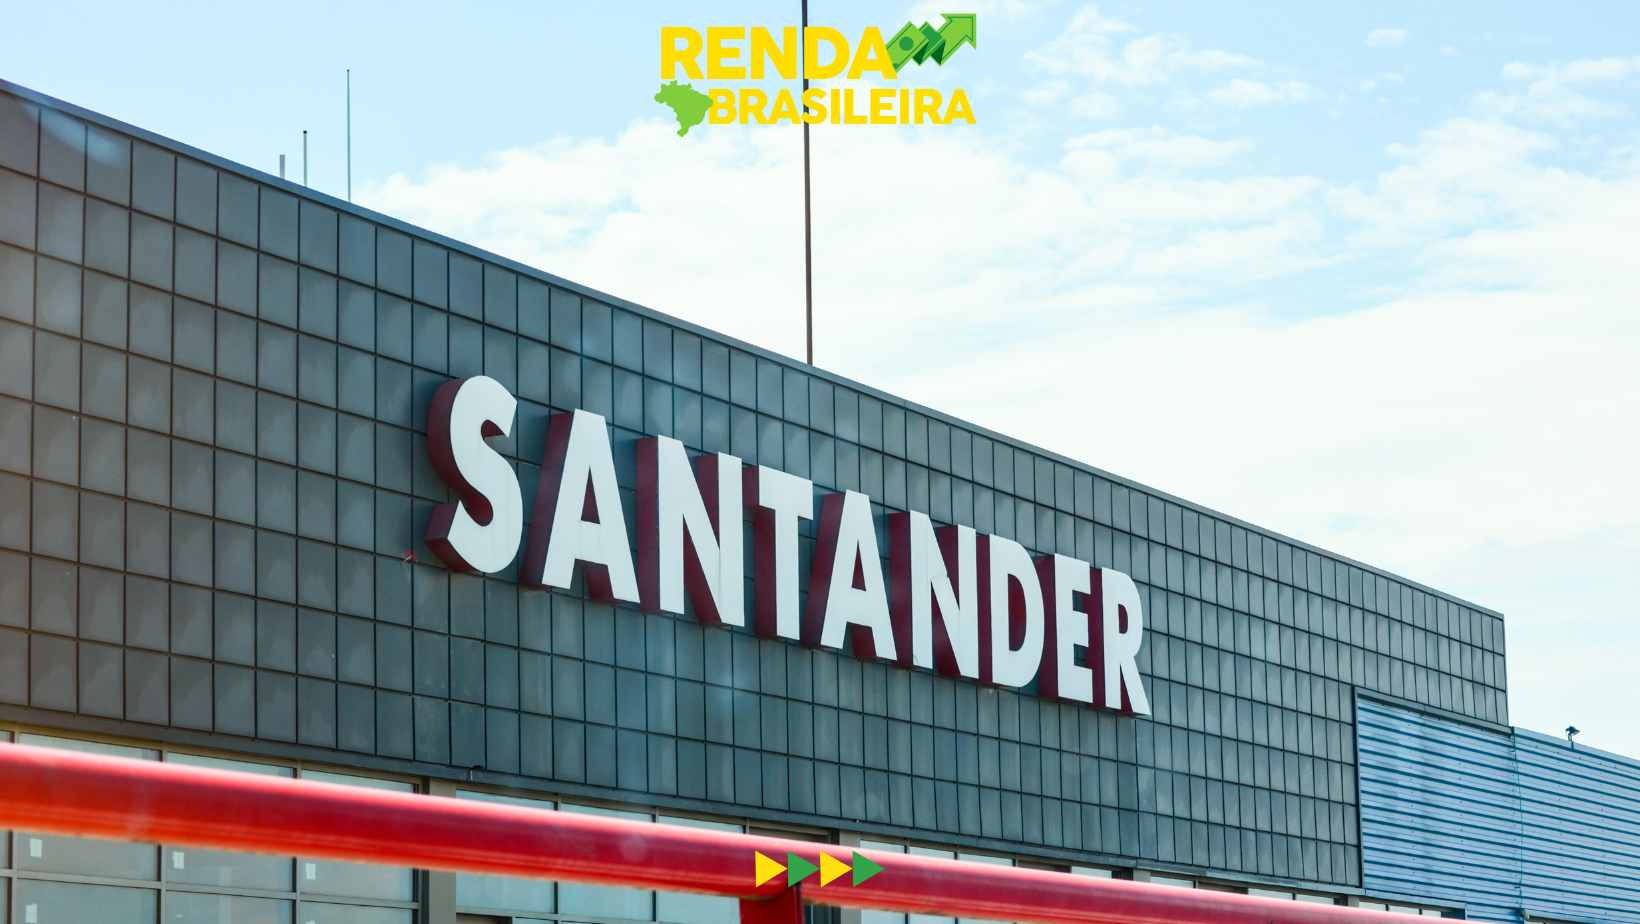 Descubra os motivos para os correntistas do Santander serem tão satisfeitos!